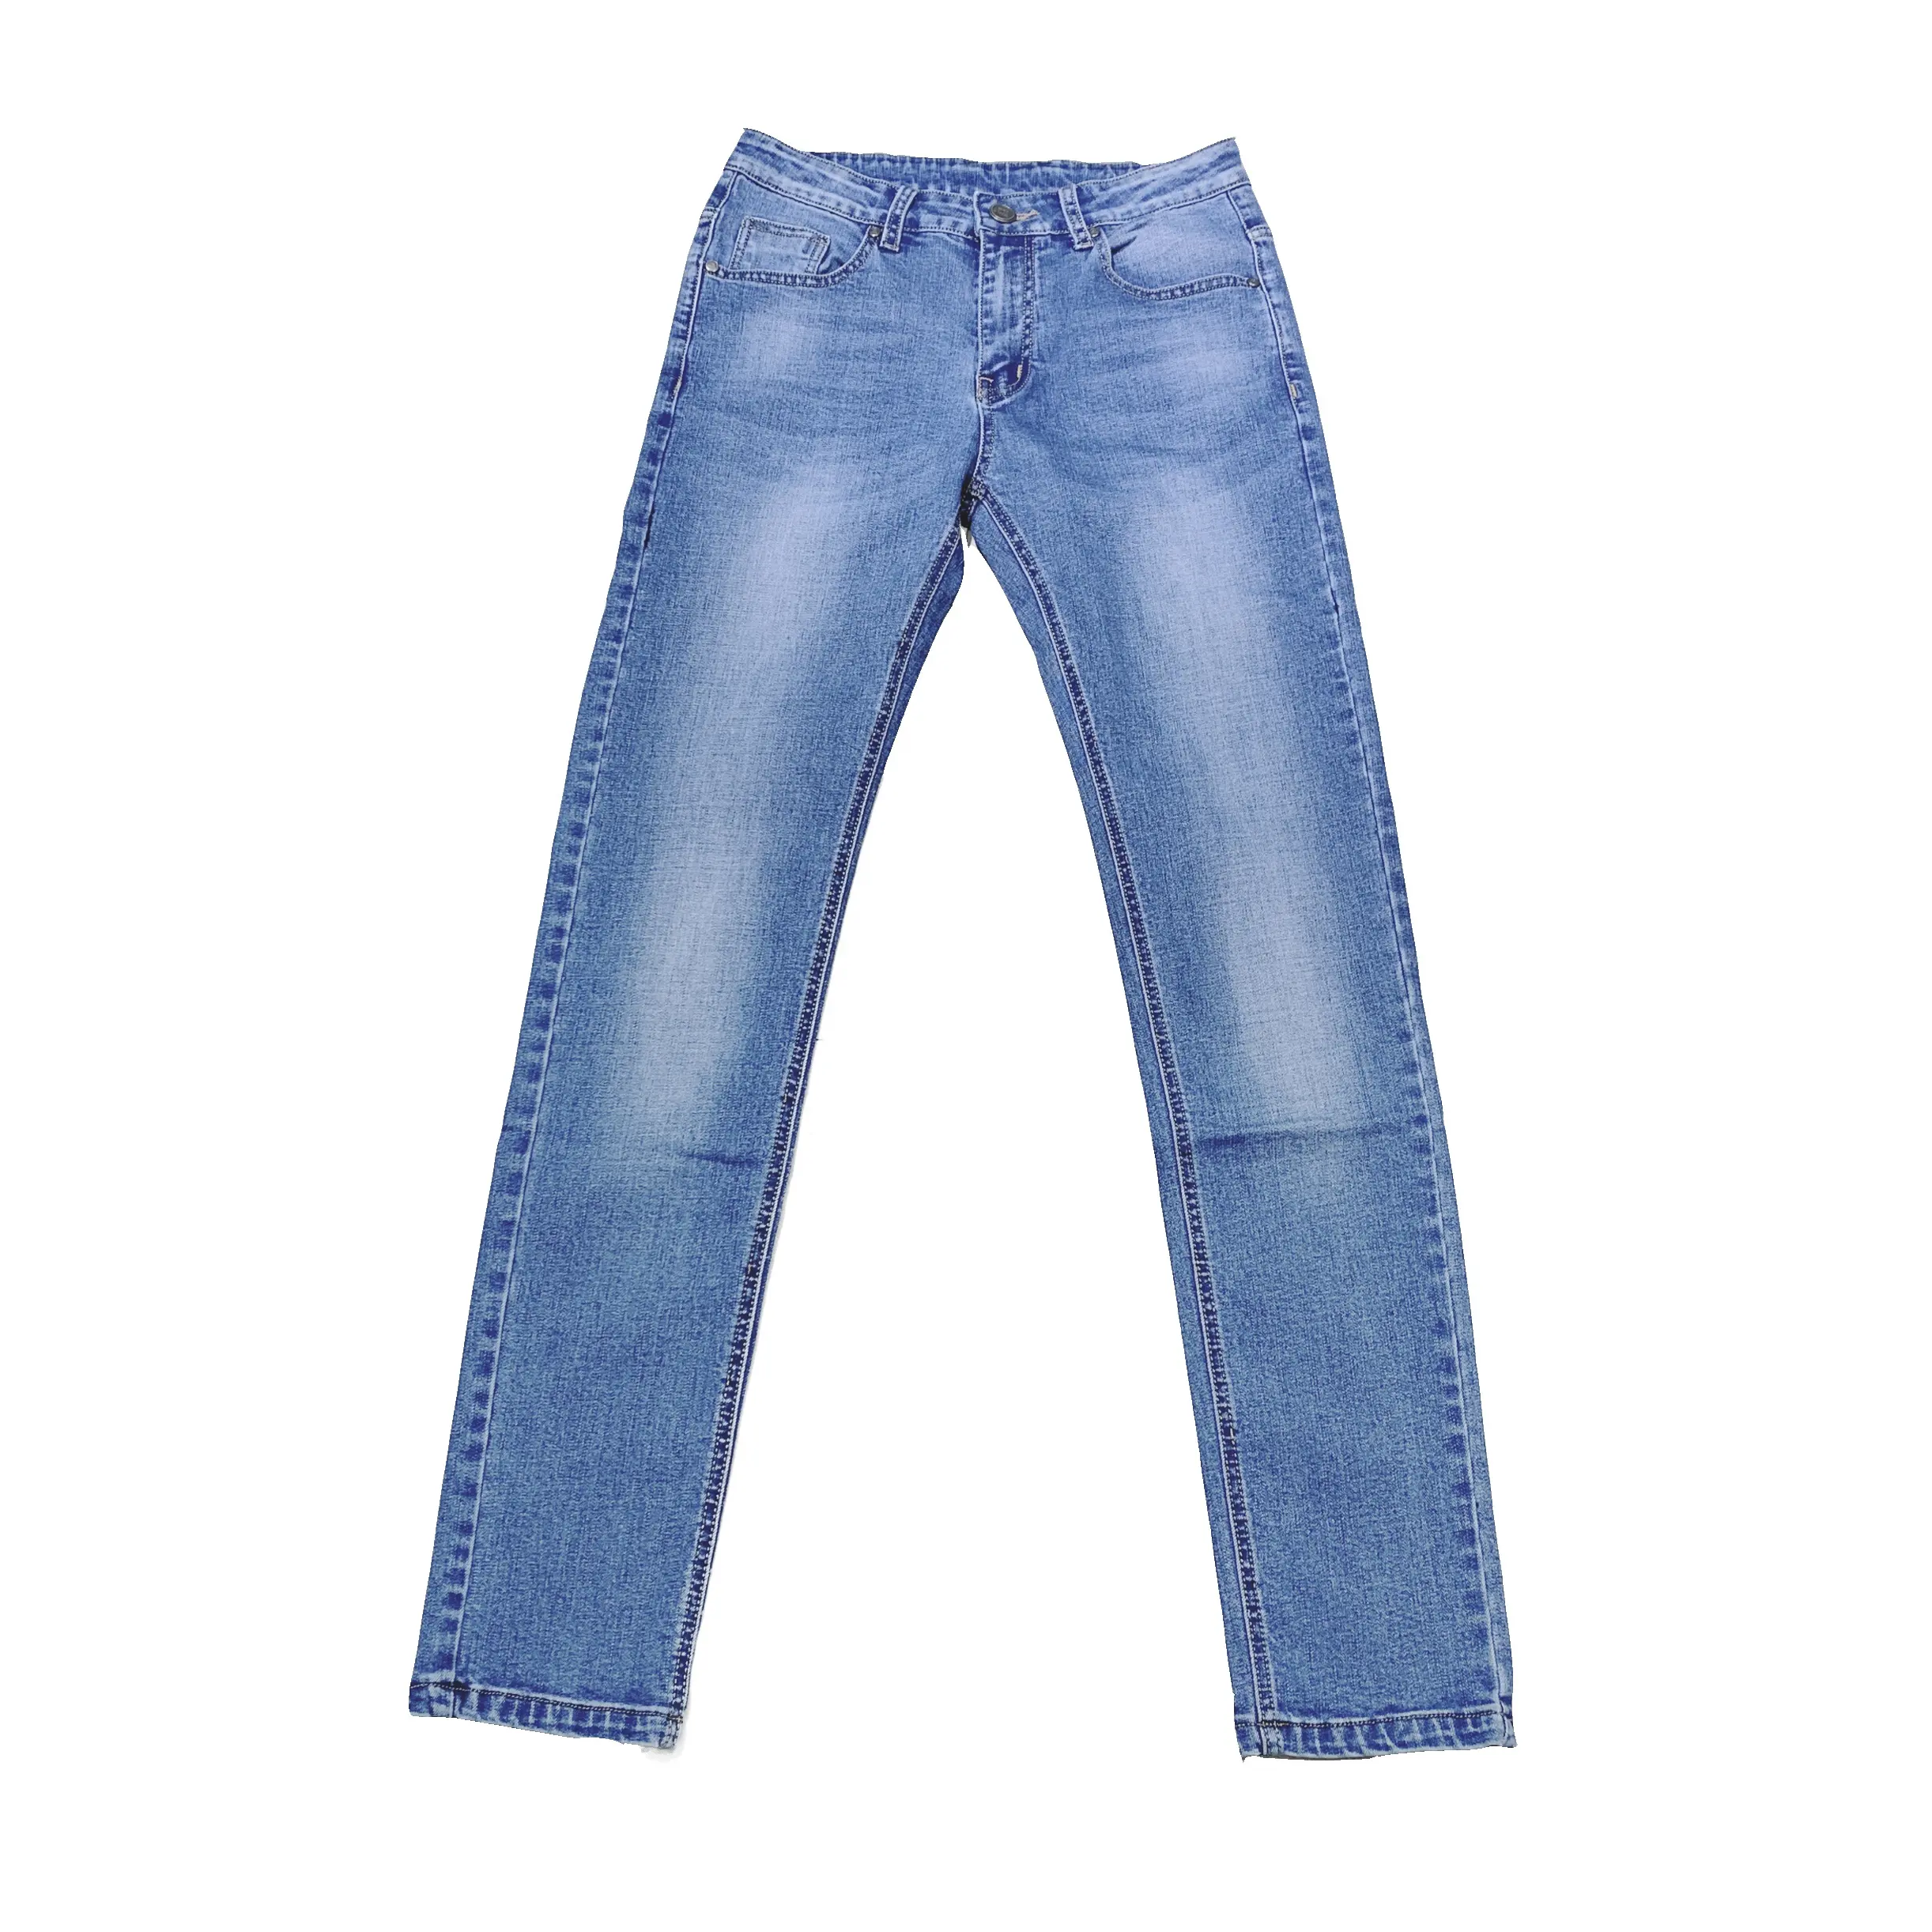 Custom Mannen Jeans Broek Casual Alle Seizoen Katoen Spandex Rechte Slanke Jeans Broek Voor Mannen